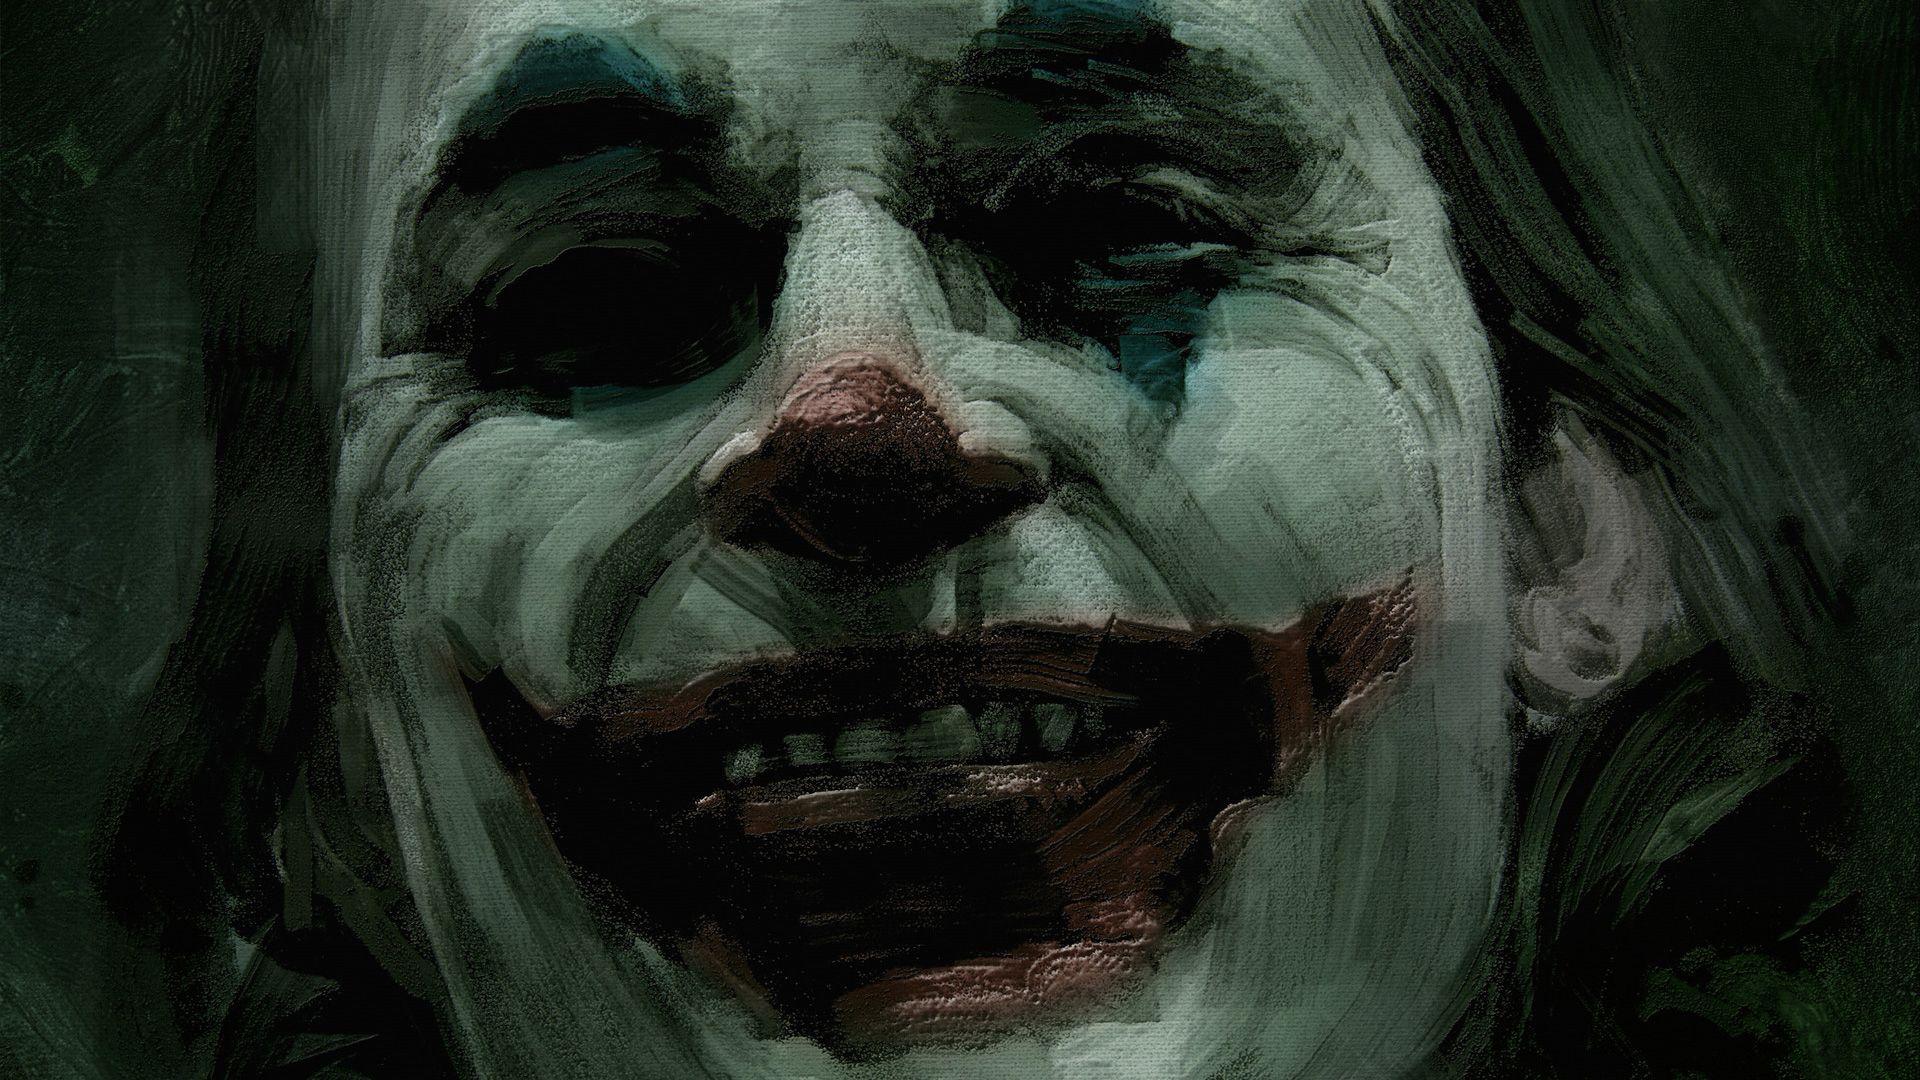 Joker 2019 Wallpaper Free Joker 2019 Background